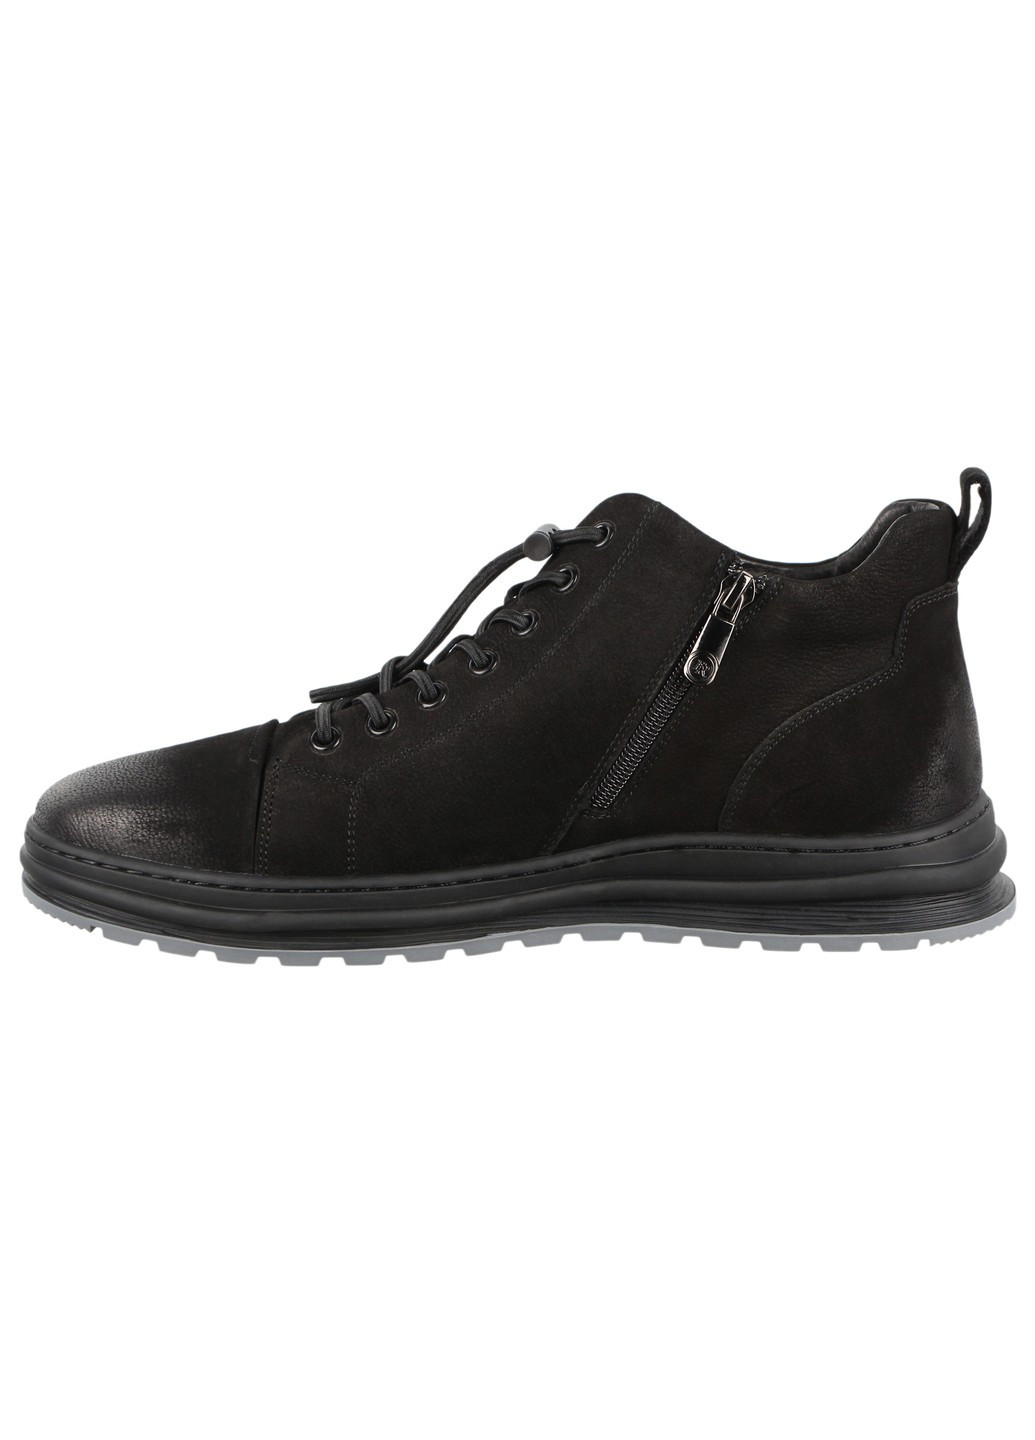 Черные зимние мужские ботинки 198530 Berisstini